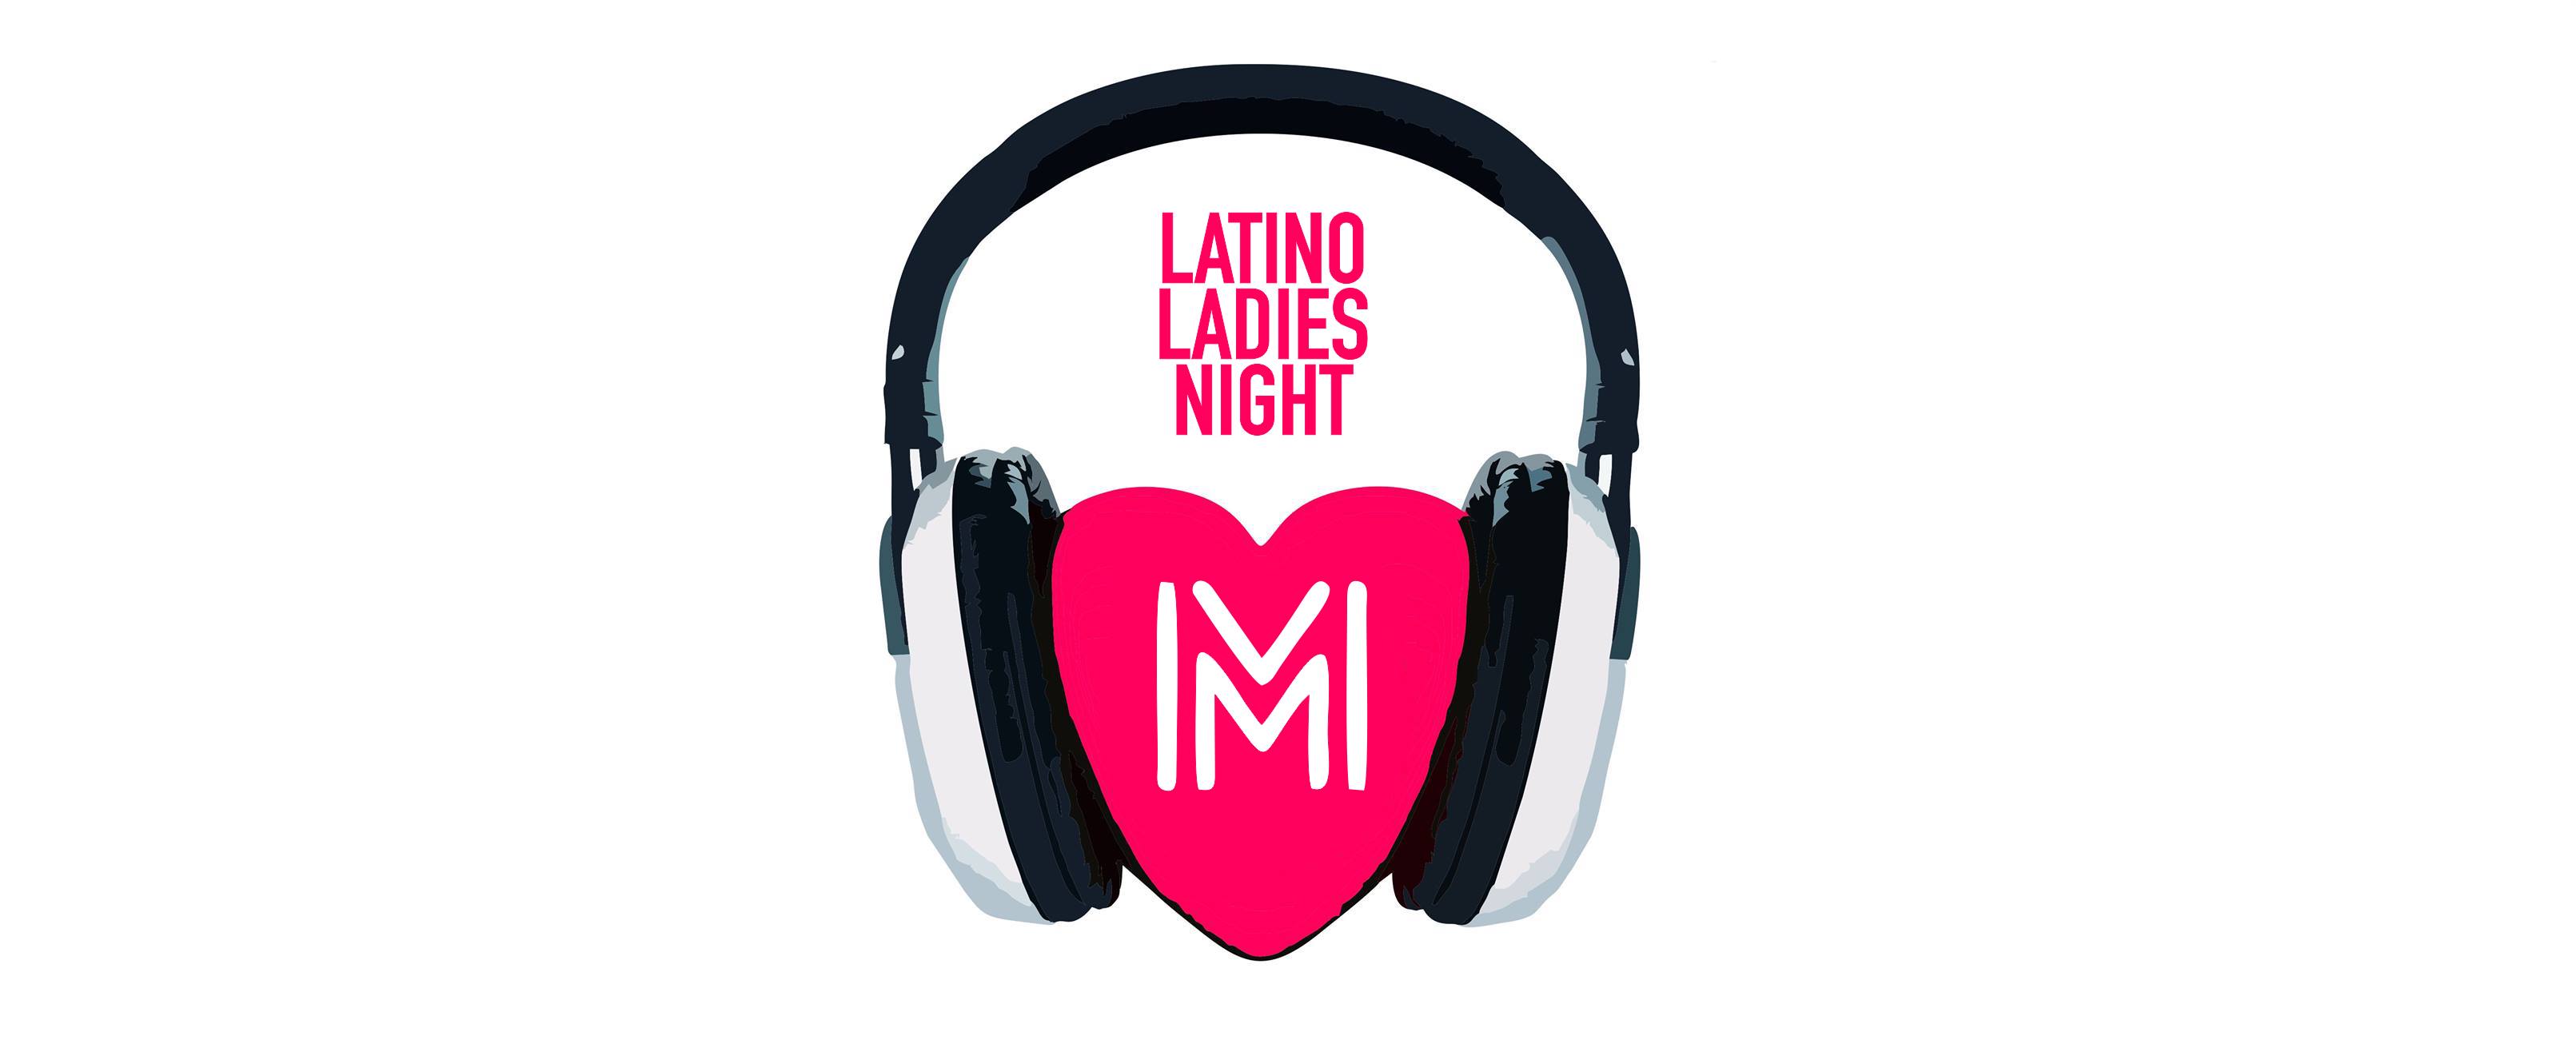  Latino Ladies Night Party Na zdjęciu logo imprezy